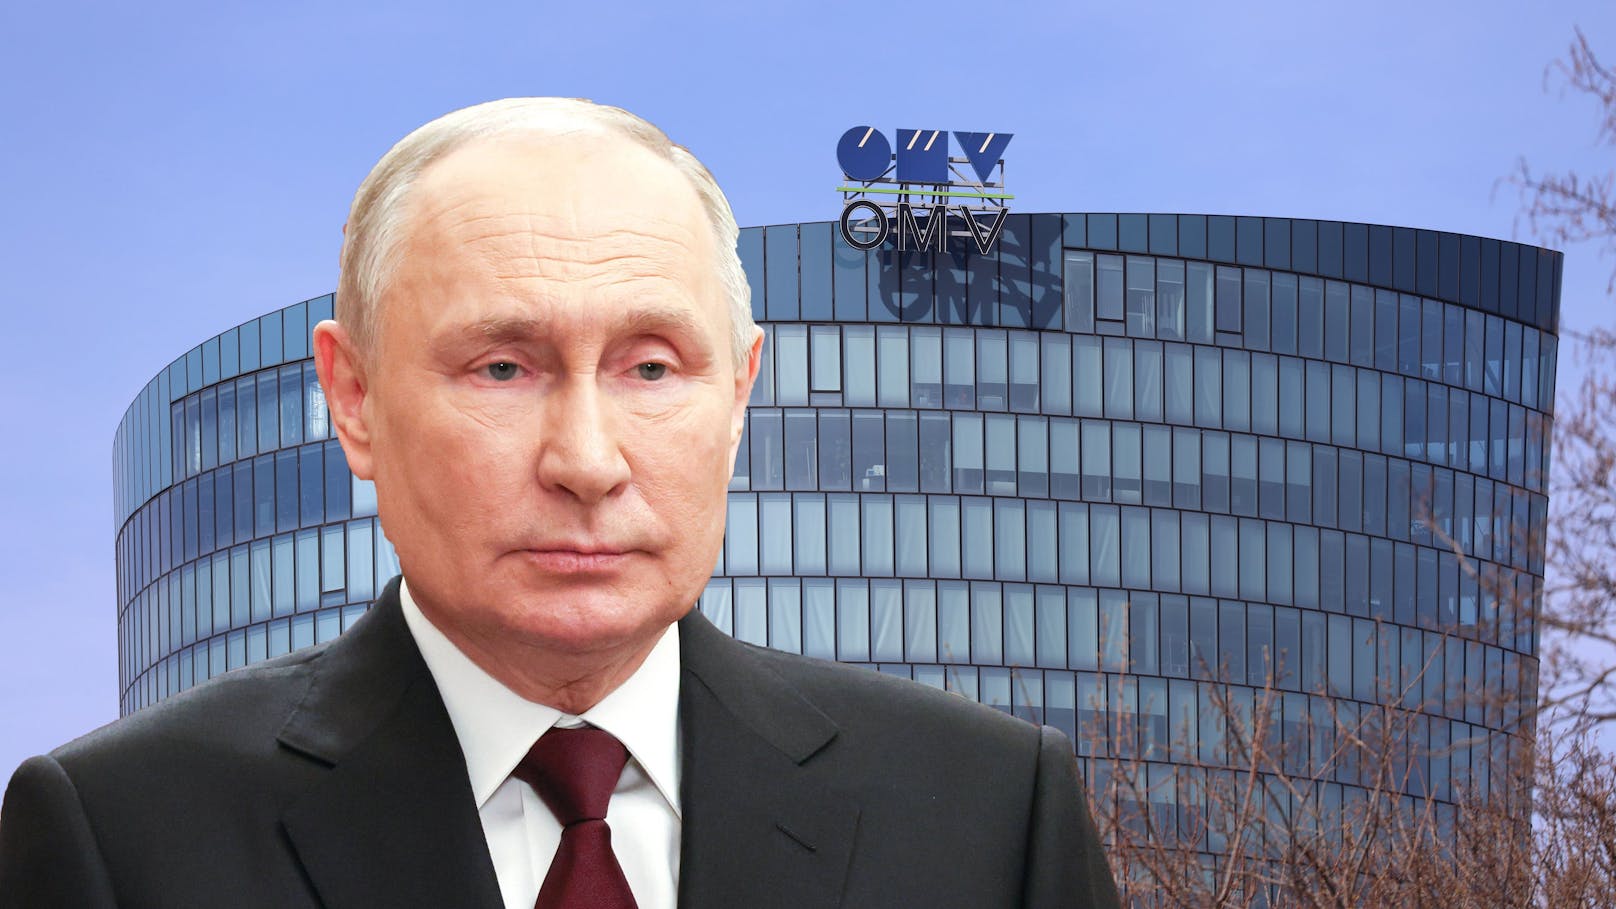 Dekret unterzeichnet – Putin krallt sich OMV-Geschäfte